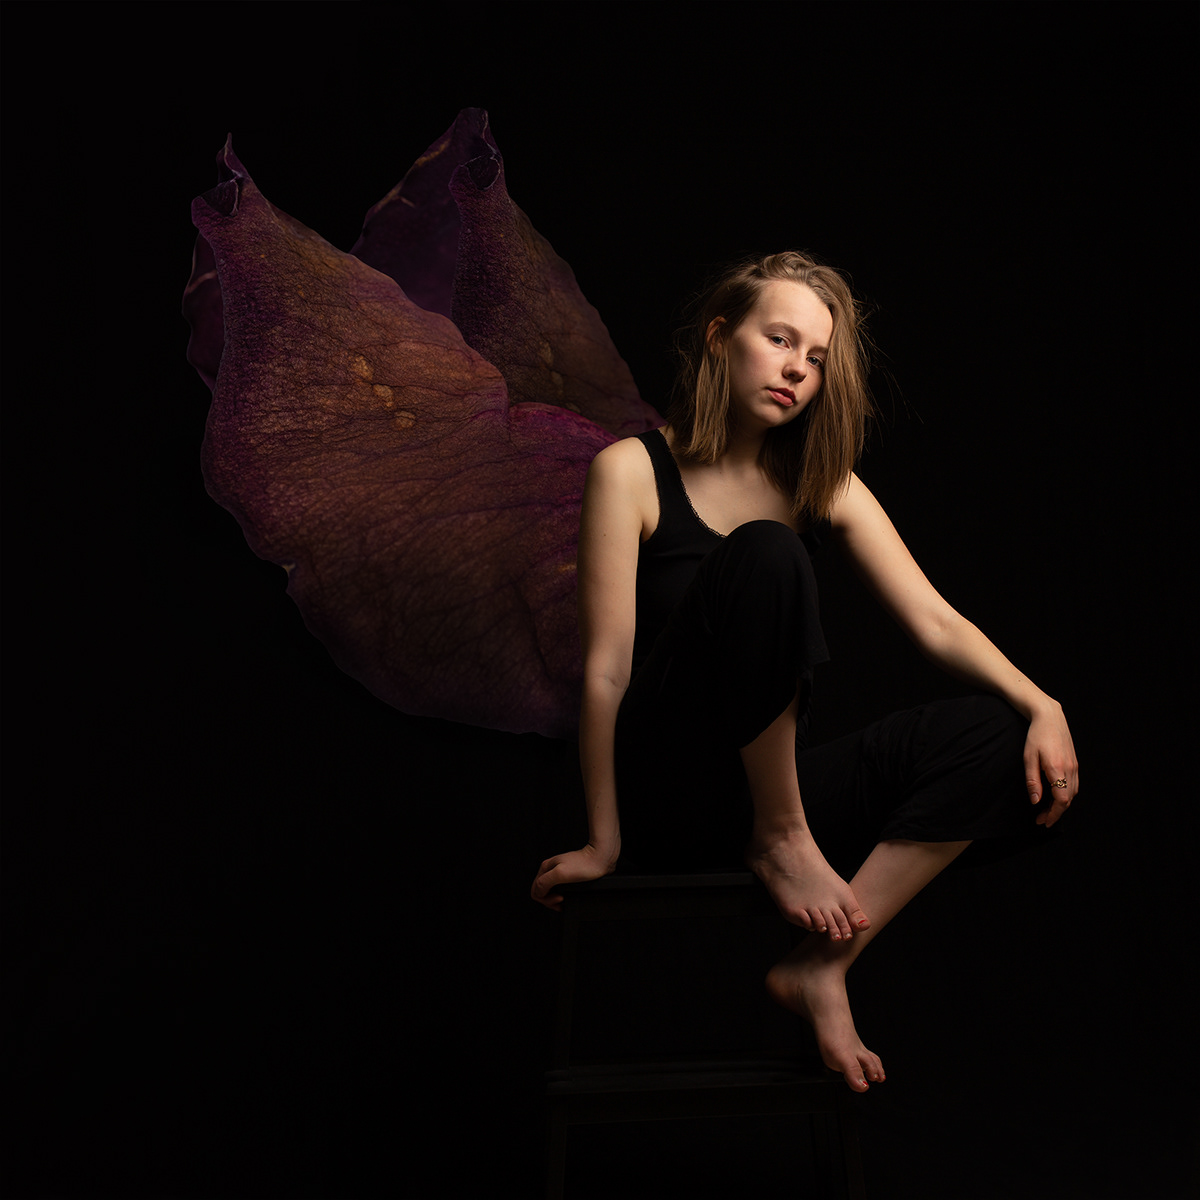 girl Photography  photoshop portrait studio wings